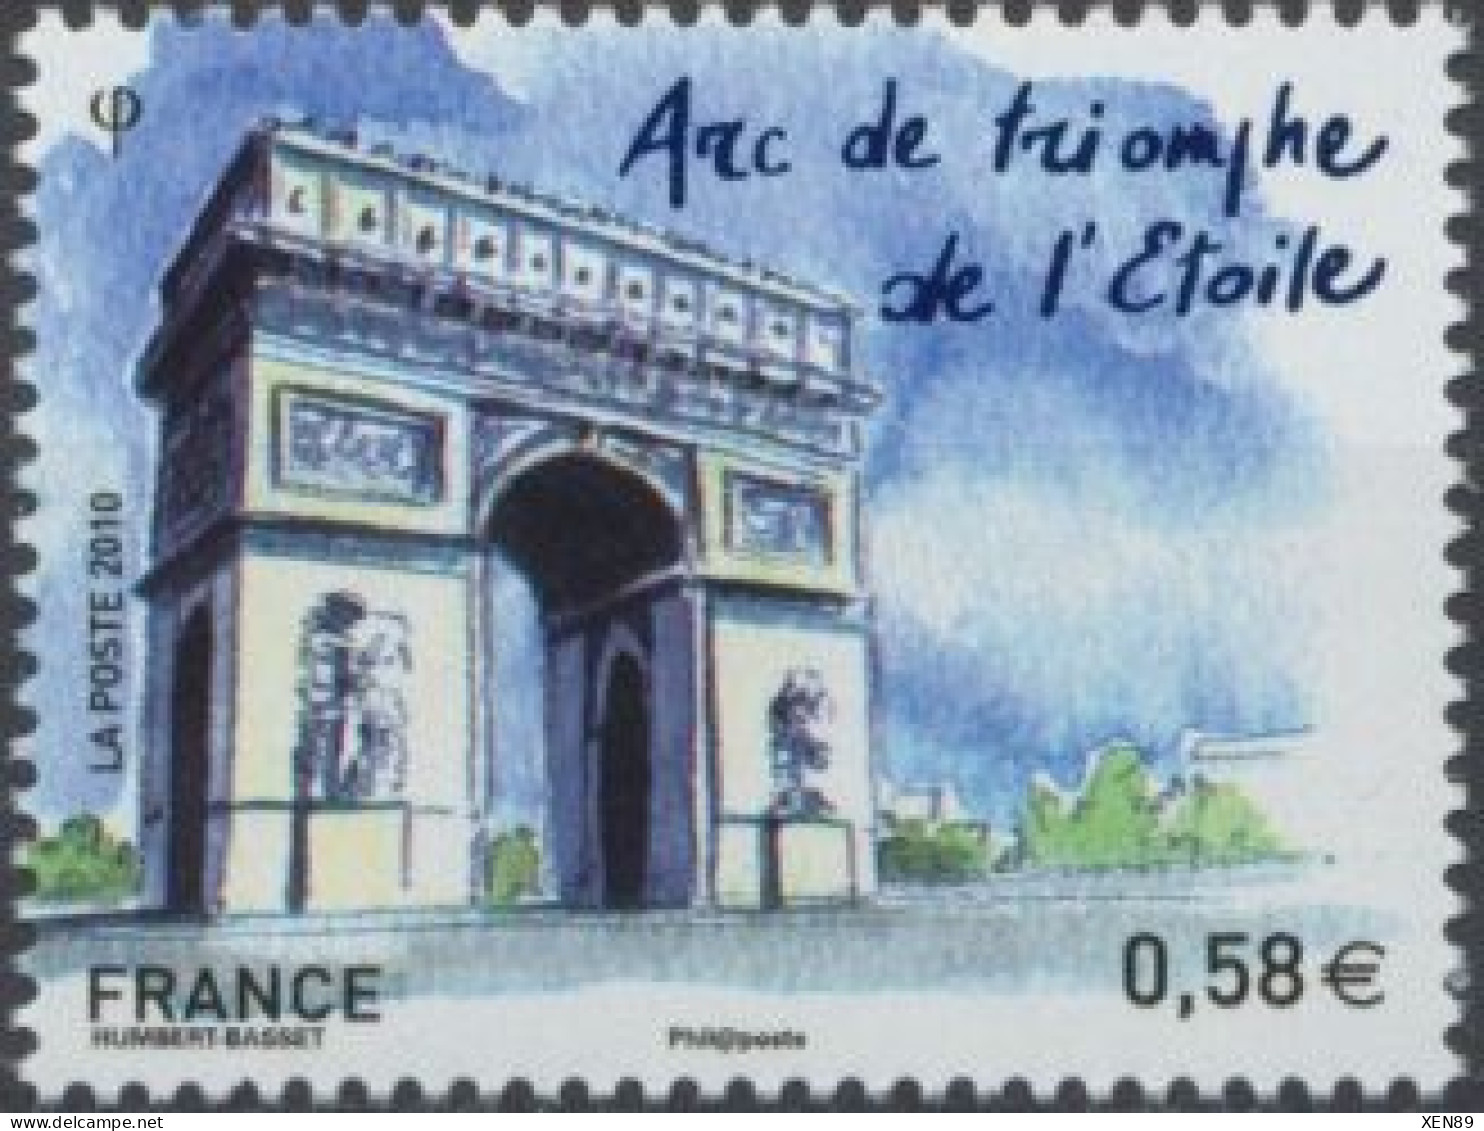 2010 - 4514 - Capitale Européennes - Paris - Arc De Triomphe De L'Etoile - Nuovi